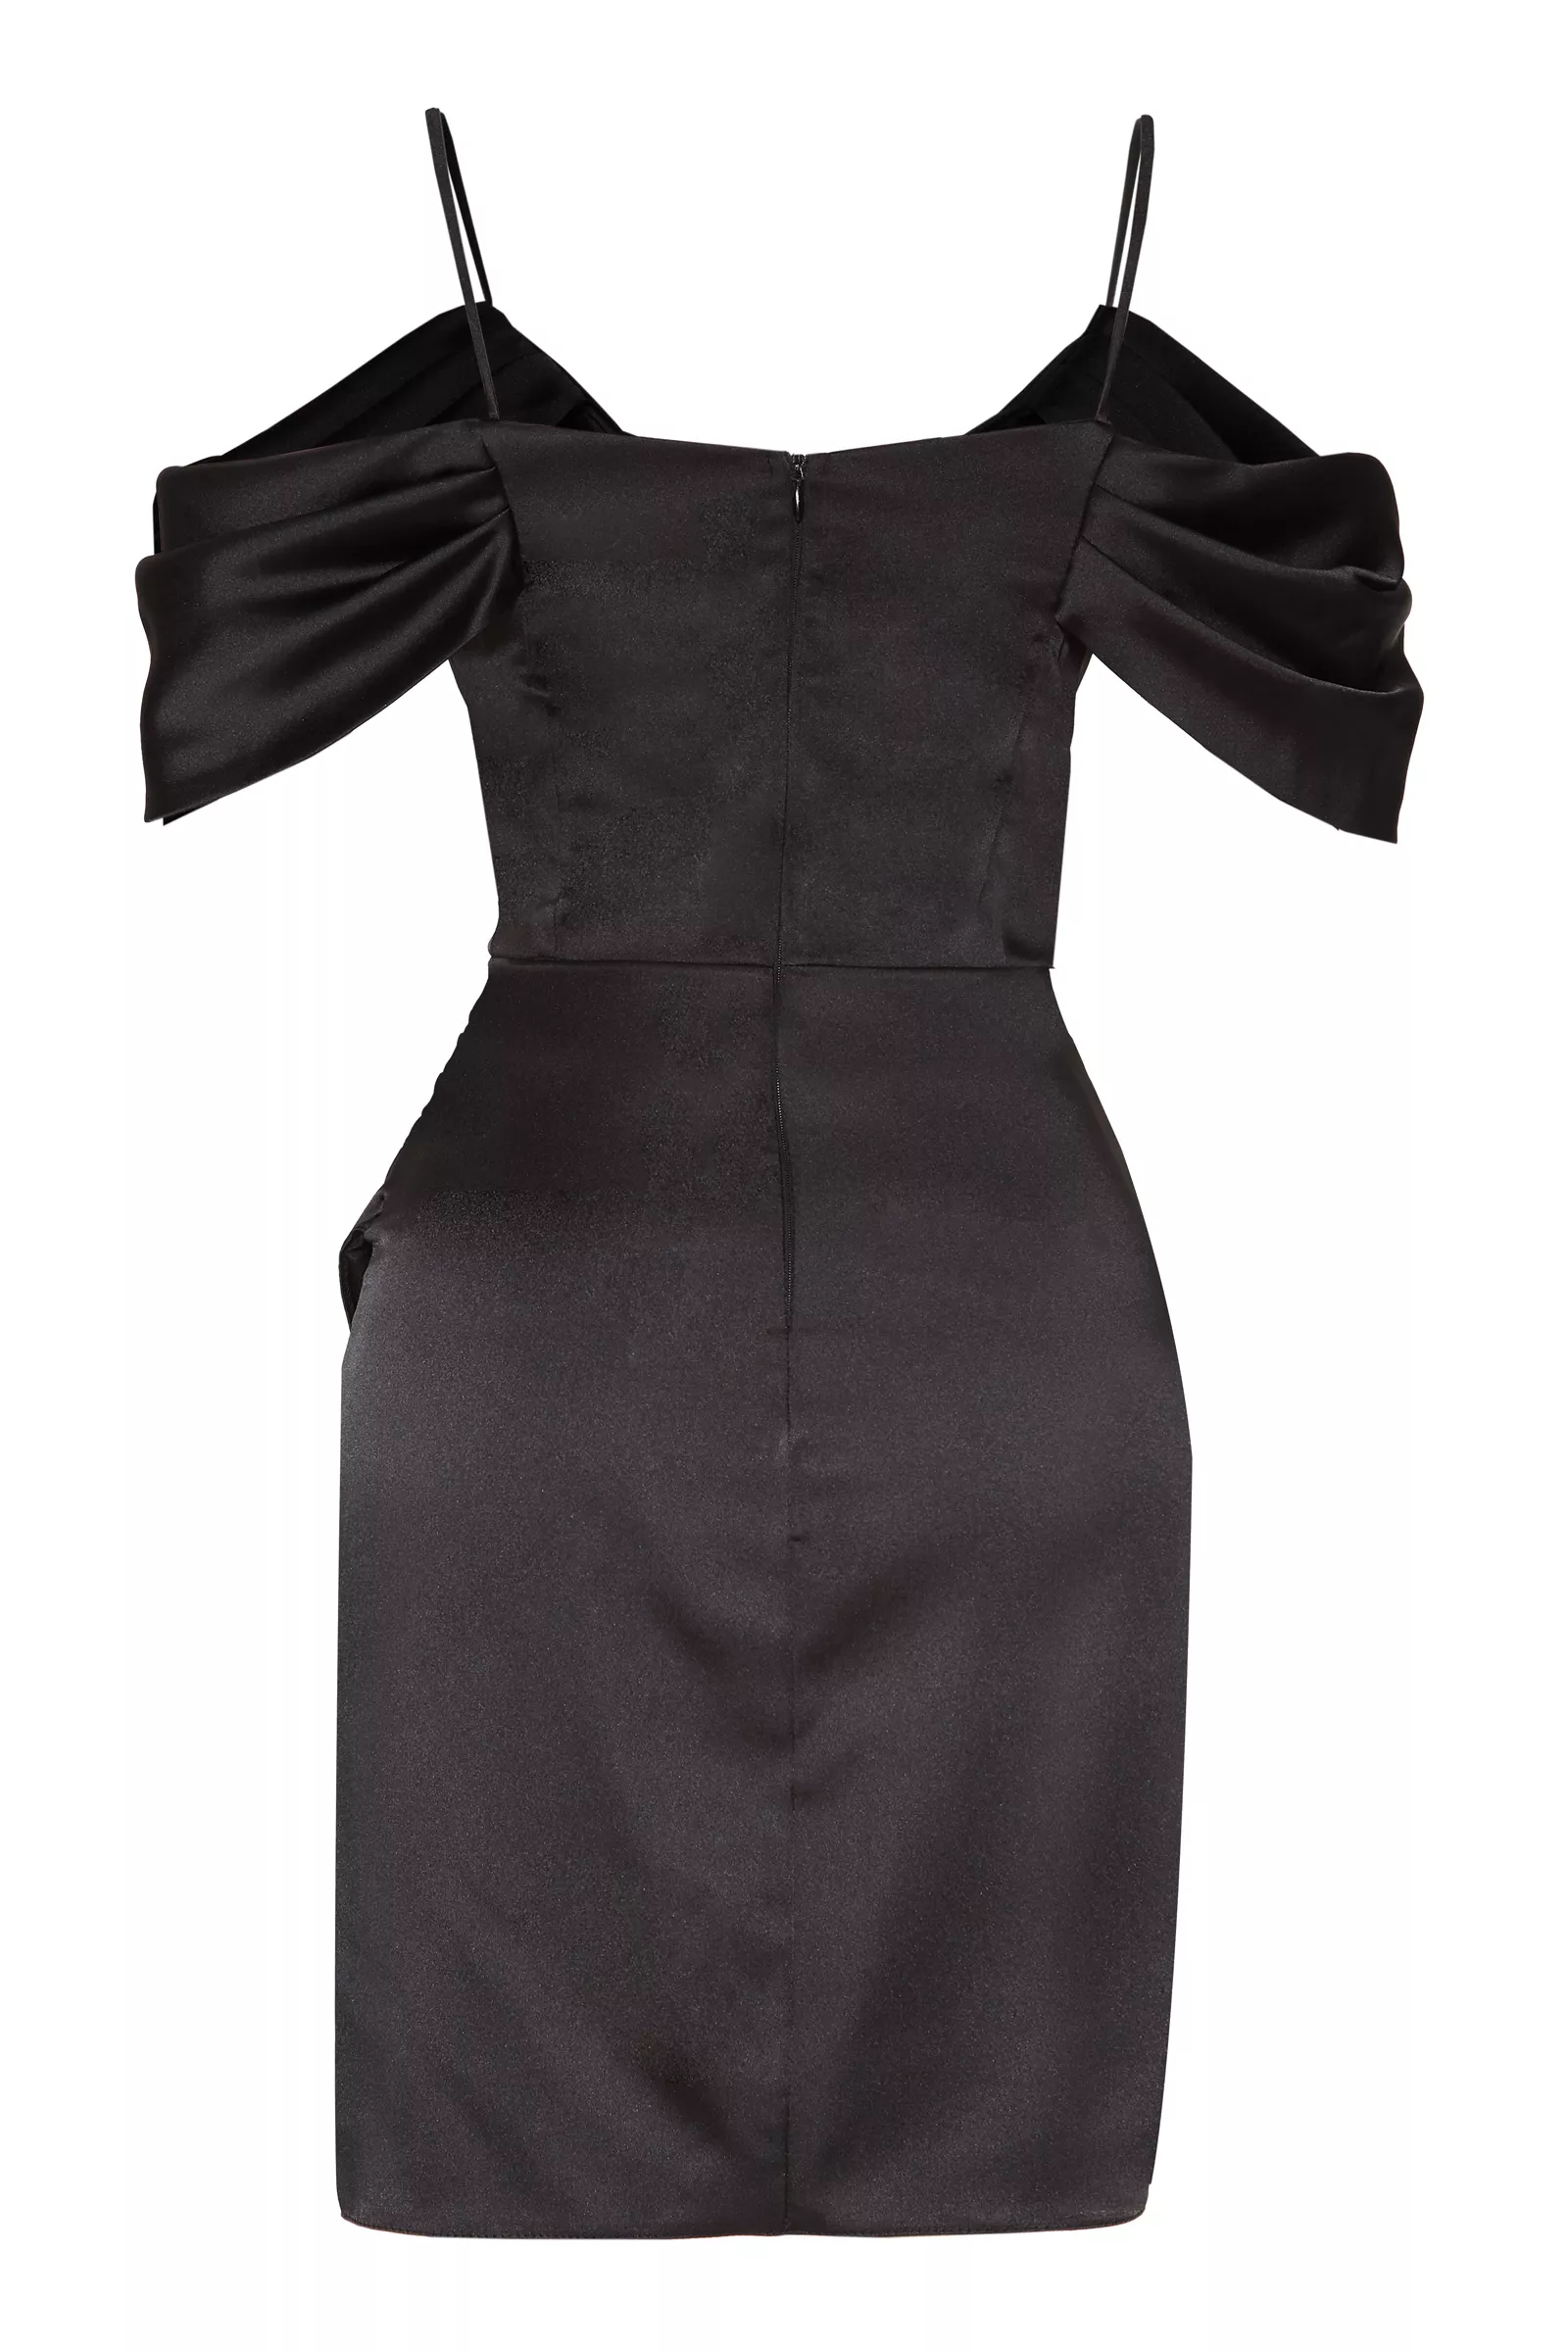 Black Satin Sleeveless Mini Dress 965010 001 D3 Black Dresses Keikei